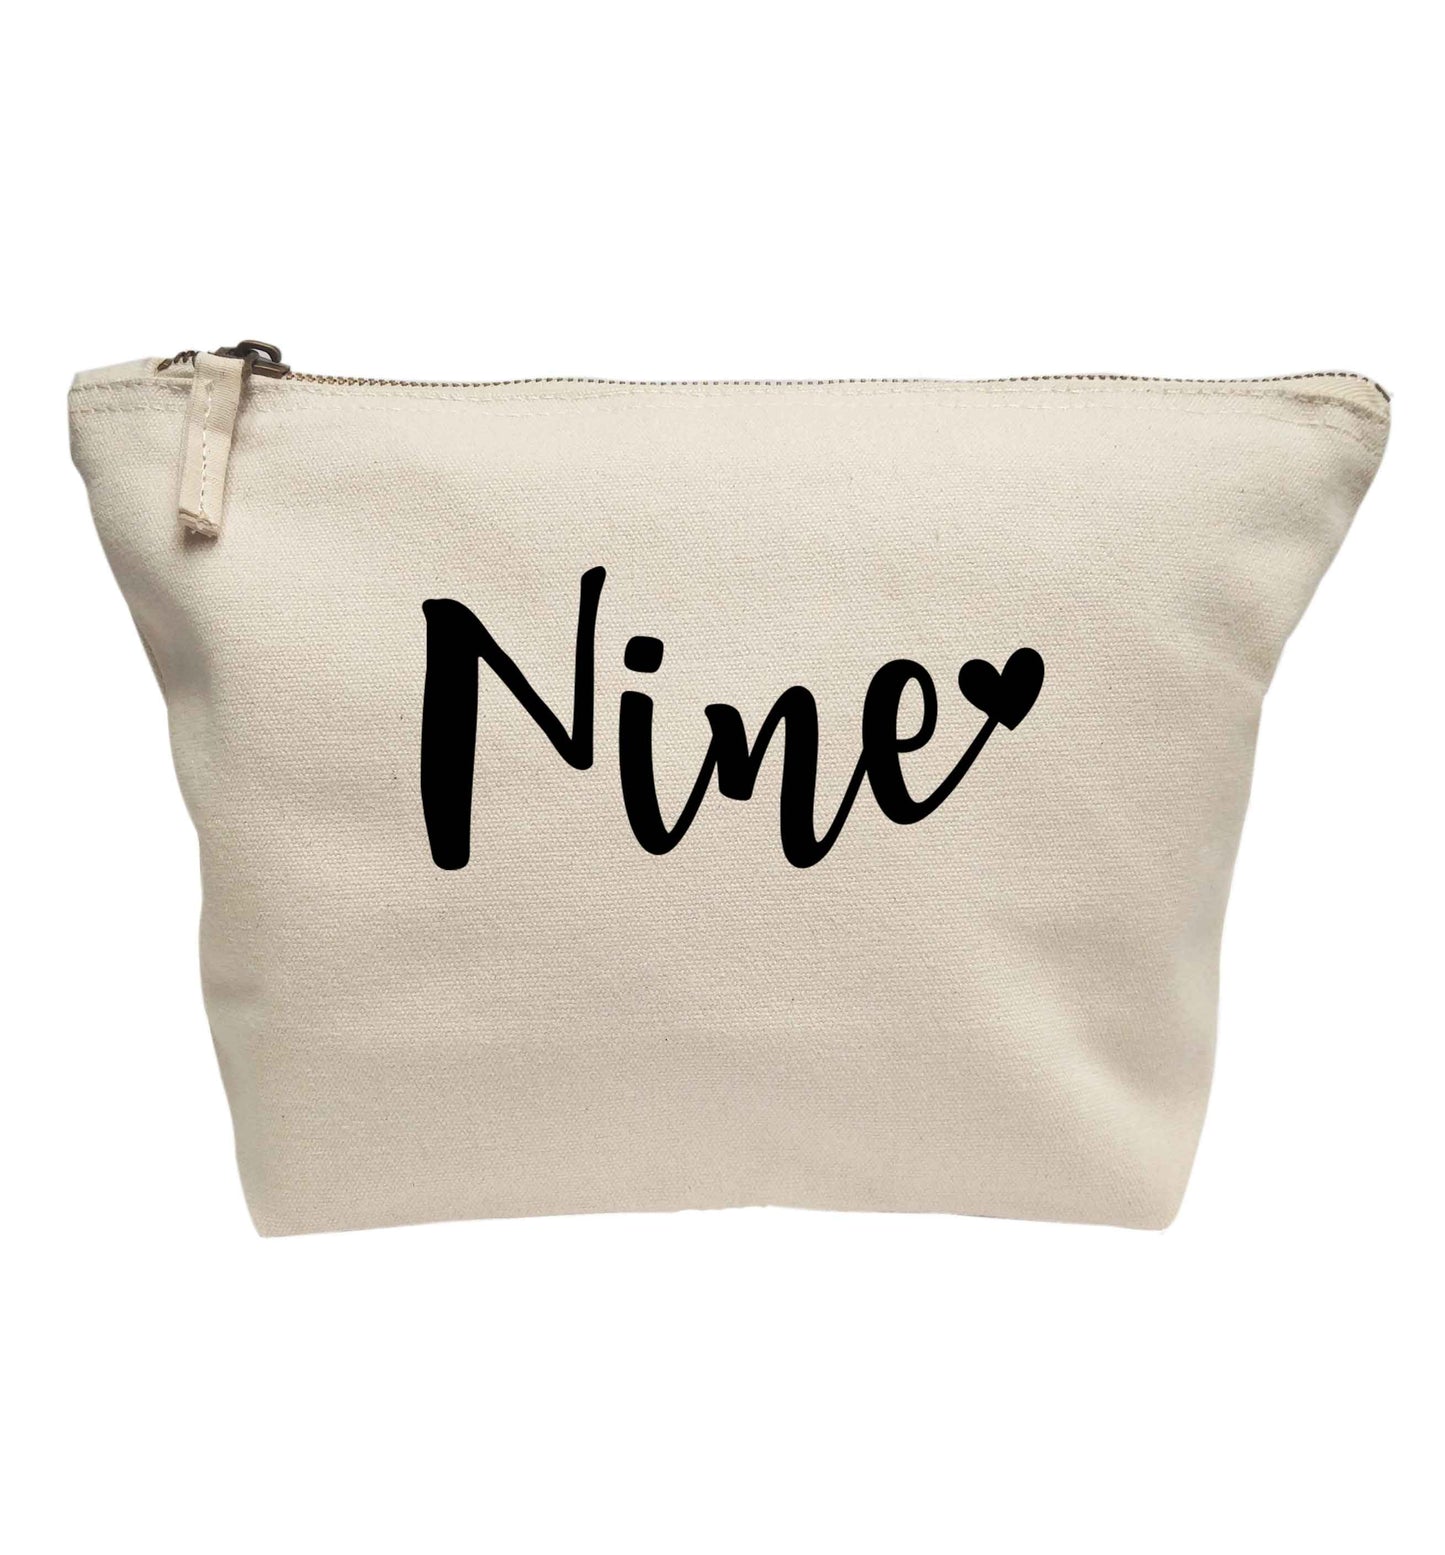 Nine and heart | Makeup / wash bag